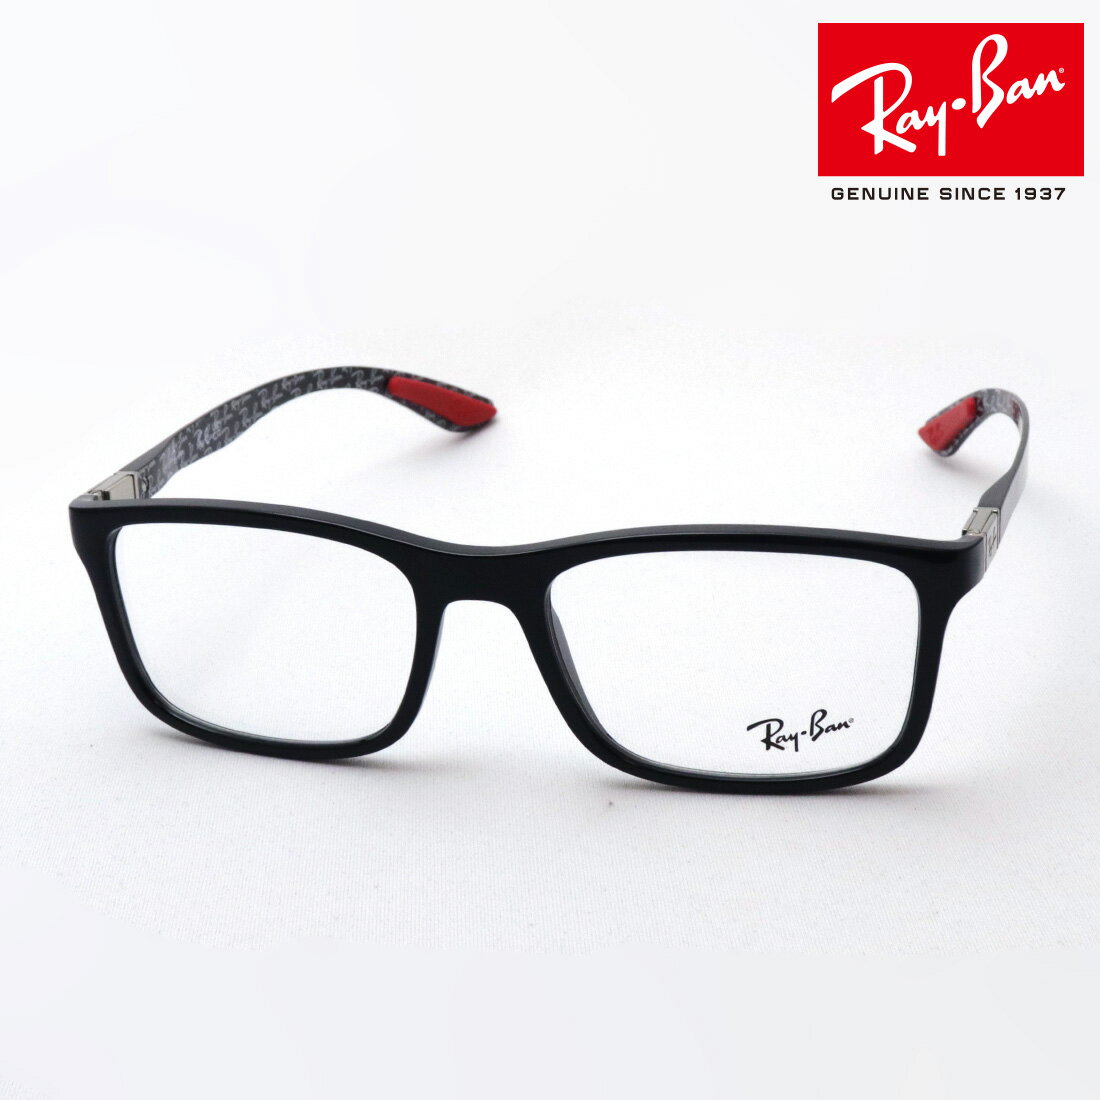 レイバン メガネ メンズ NewModel 正規レイバン日本最大級の品揃え レイバン メガネ フレーム Ray-Ban RX8908 2000 伊達メガネ 度付き ブルーライト カット 眼鏡 RayBan スクエア ブラック系